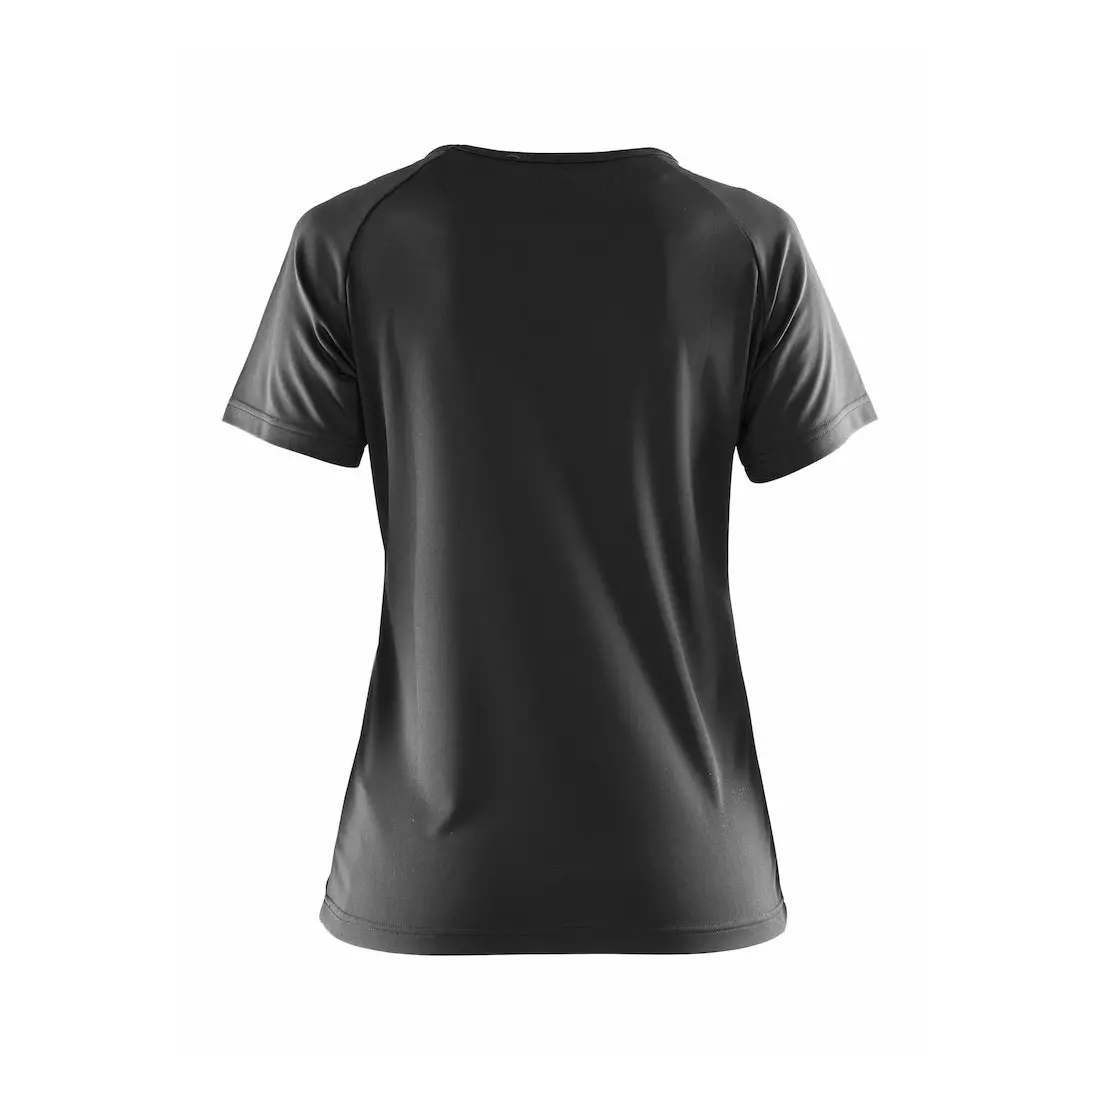 CRAFT PRIME Damen-Sport-T-Shirt 1903176-1999